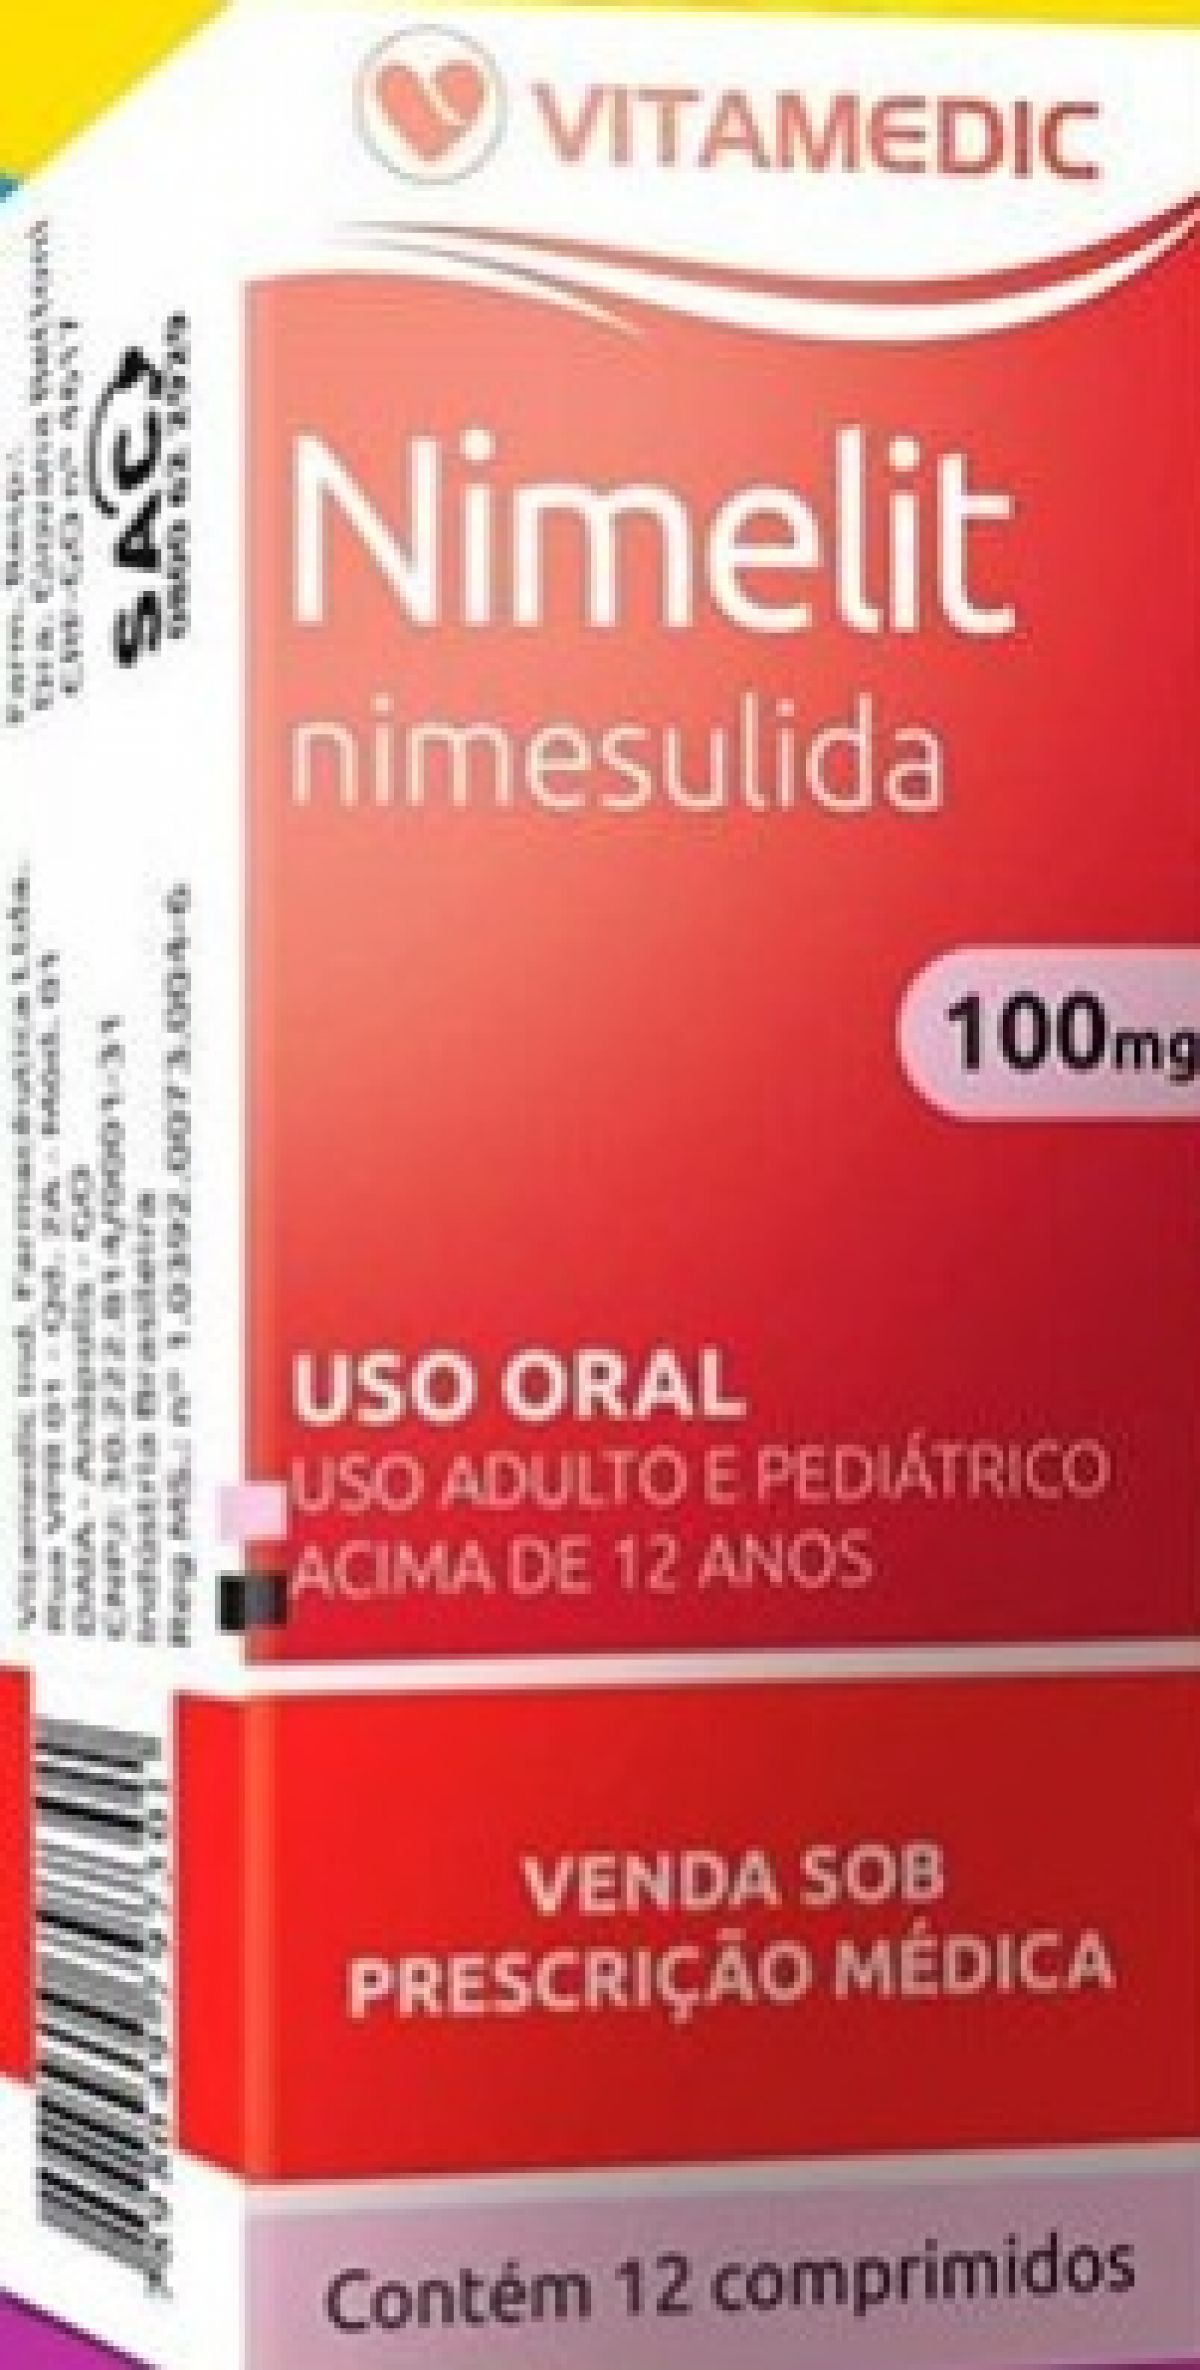 Comprar Nimelit 50mg/mL, caixa com 1 frasco gotejador com 15mL de suspensão  de uso oral